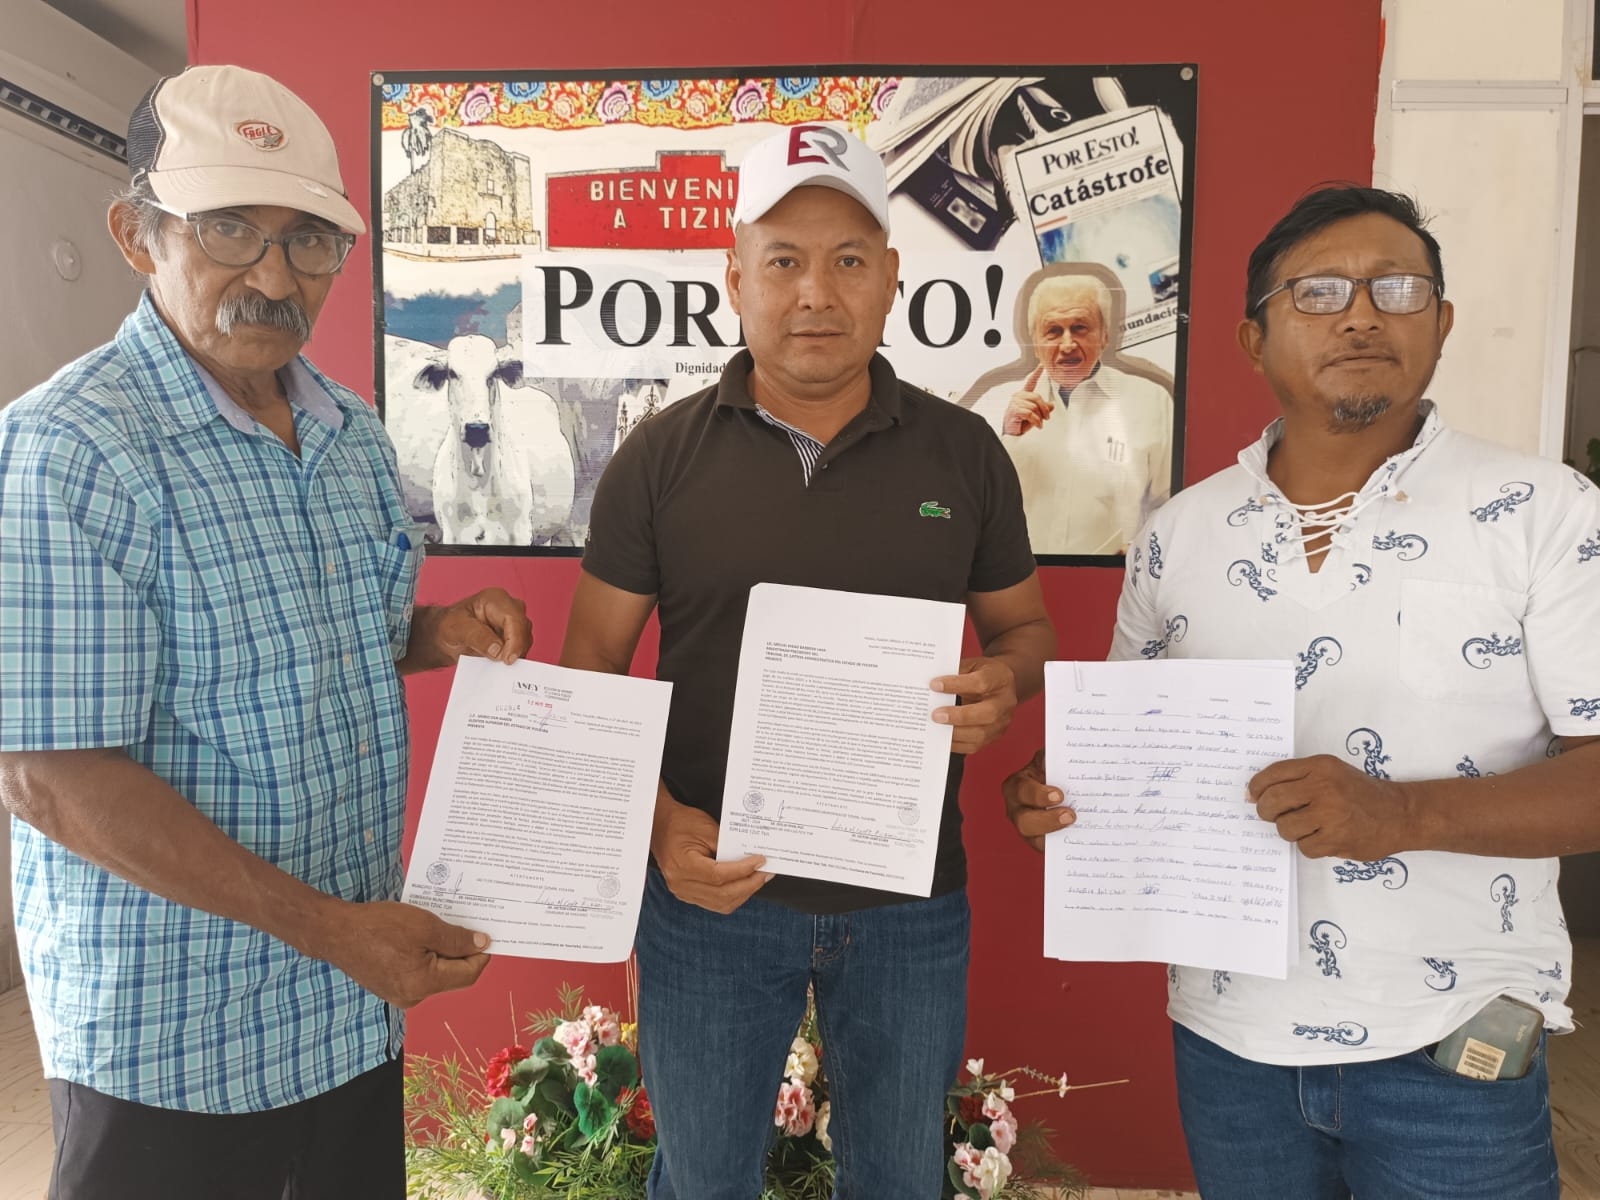 Los inconformes presentaron sus demandas ante el Tribunal de Justicia Administrativa de Yucatán